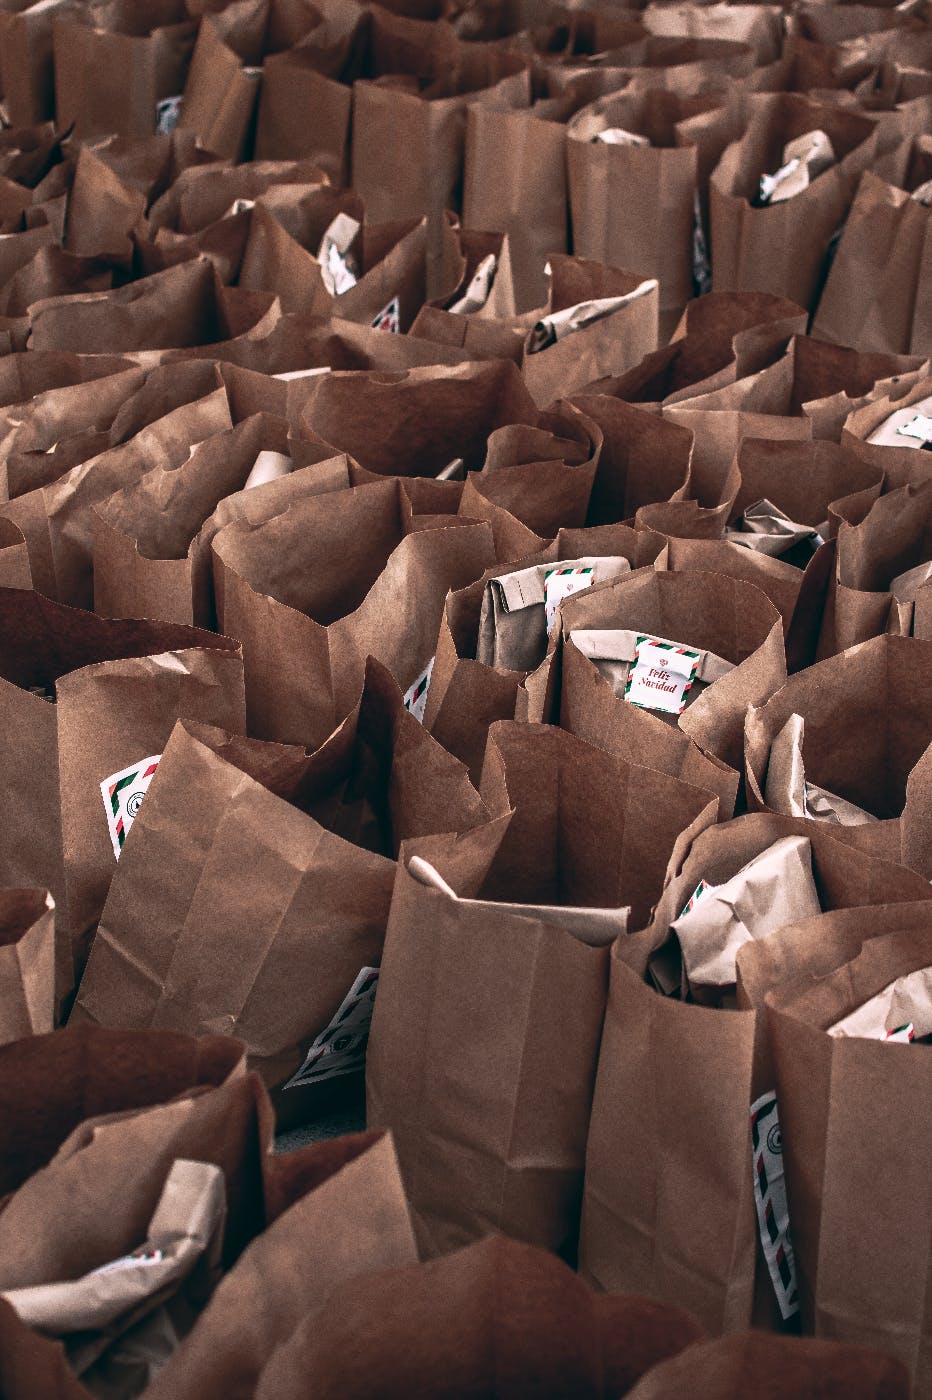 Full brown paper bags at a food bank